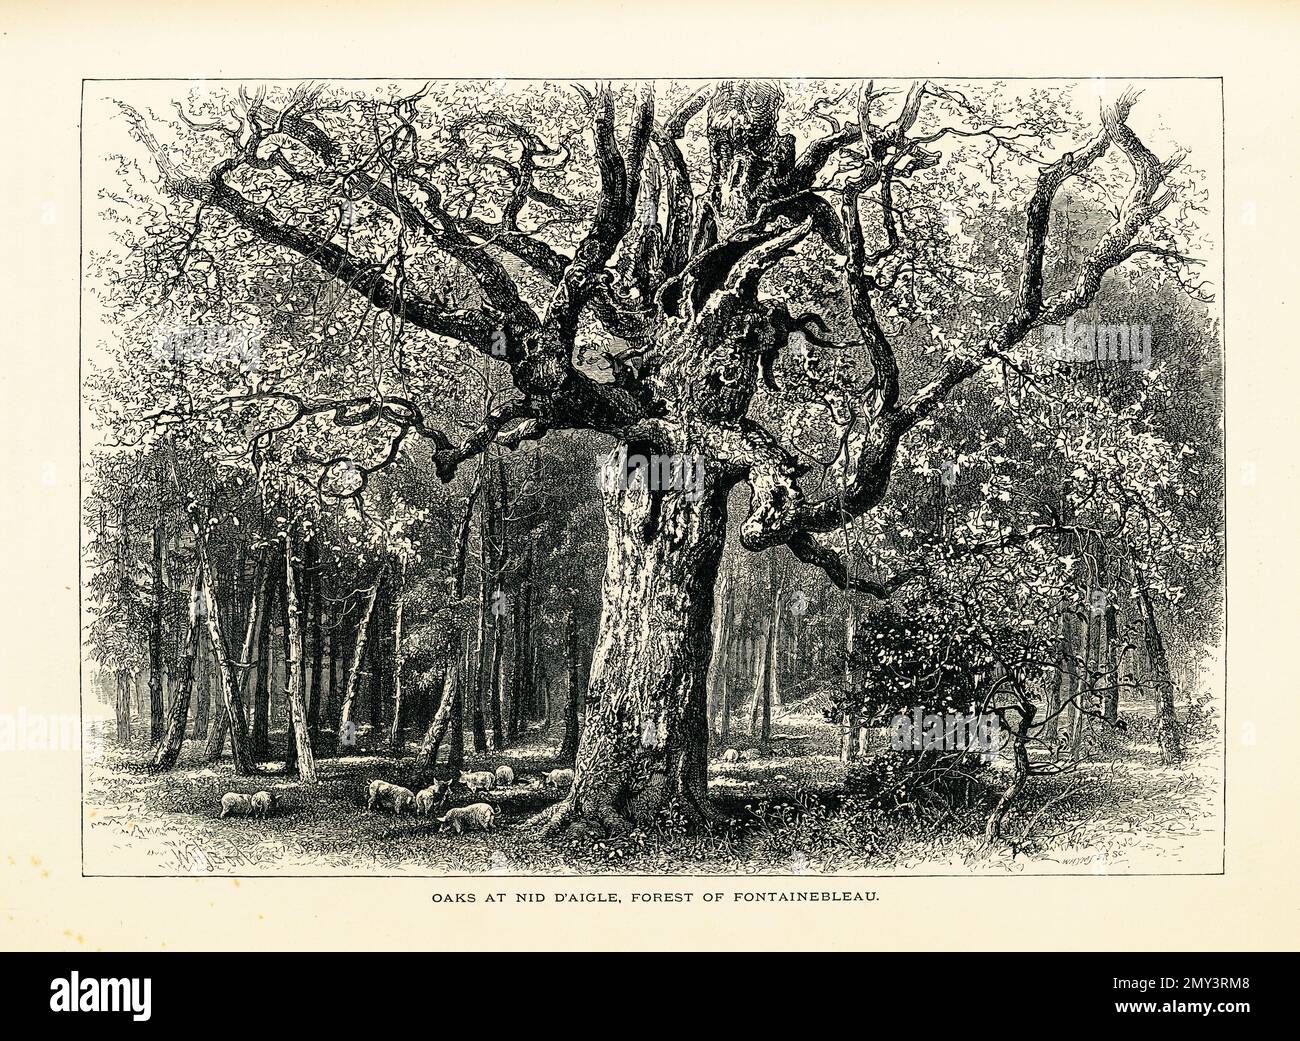 Antikes Bild der Eichen im Wald von Fontainebleau, sechzig Kilometer südöstlich von Paris, Frankreich. Die Gravur wurde in Picturesq veröffentlicht Stockfoto